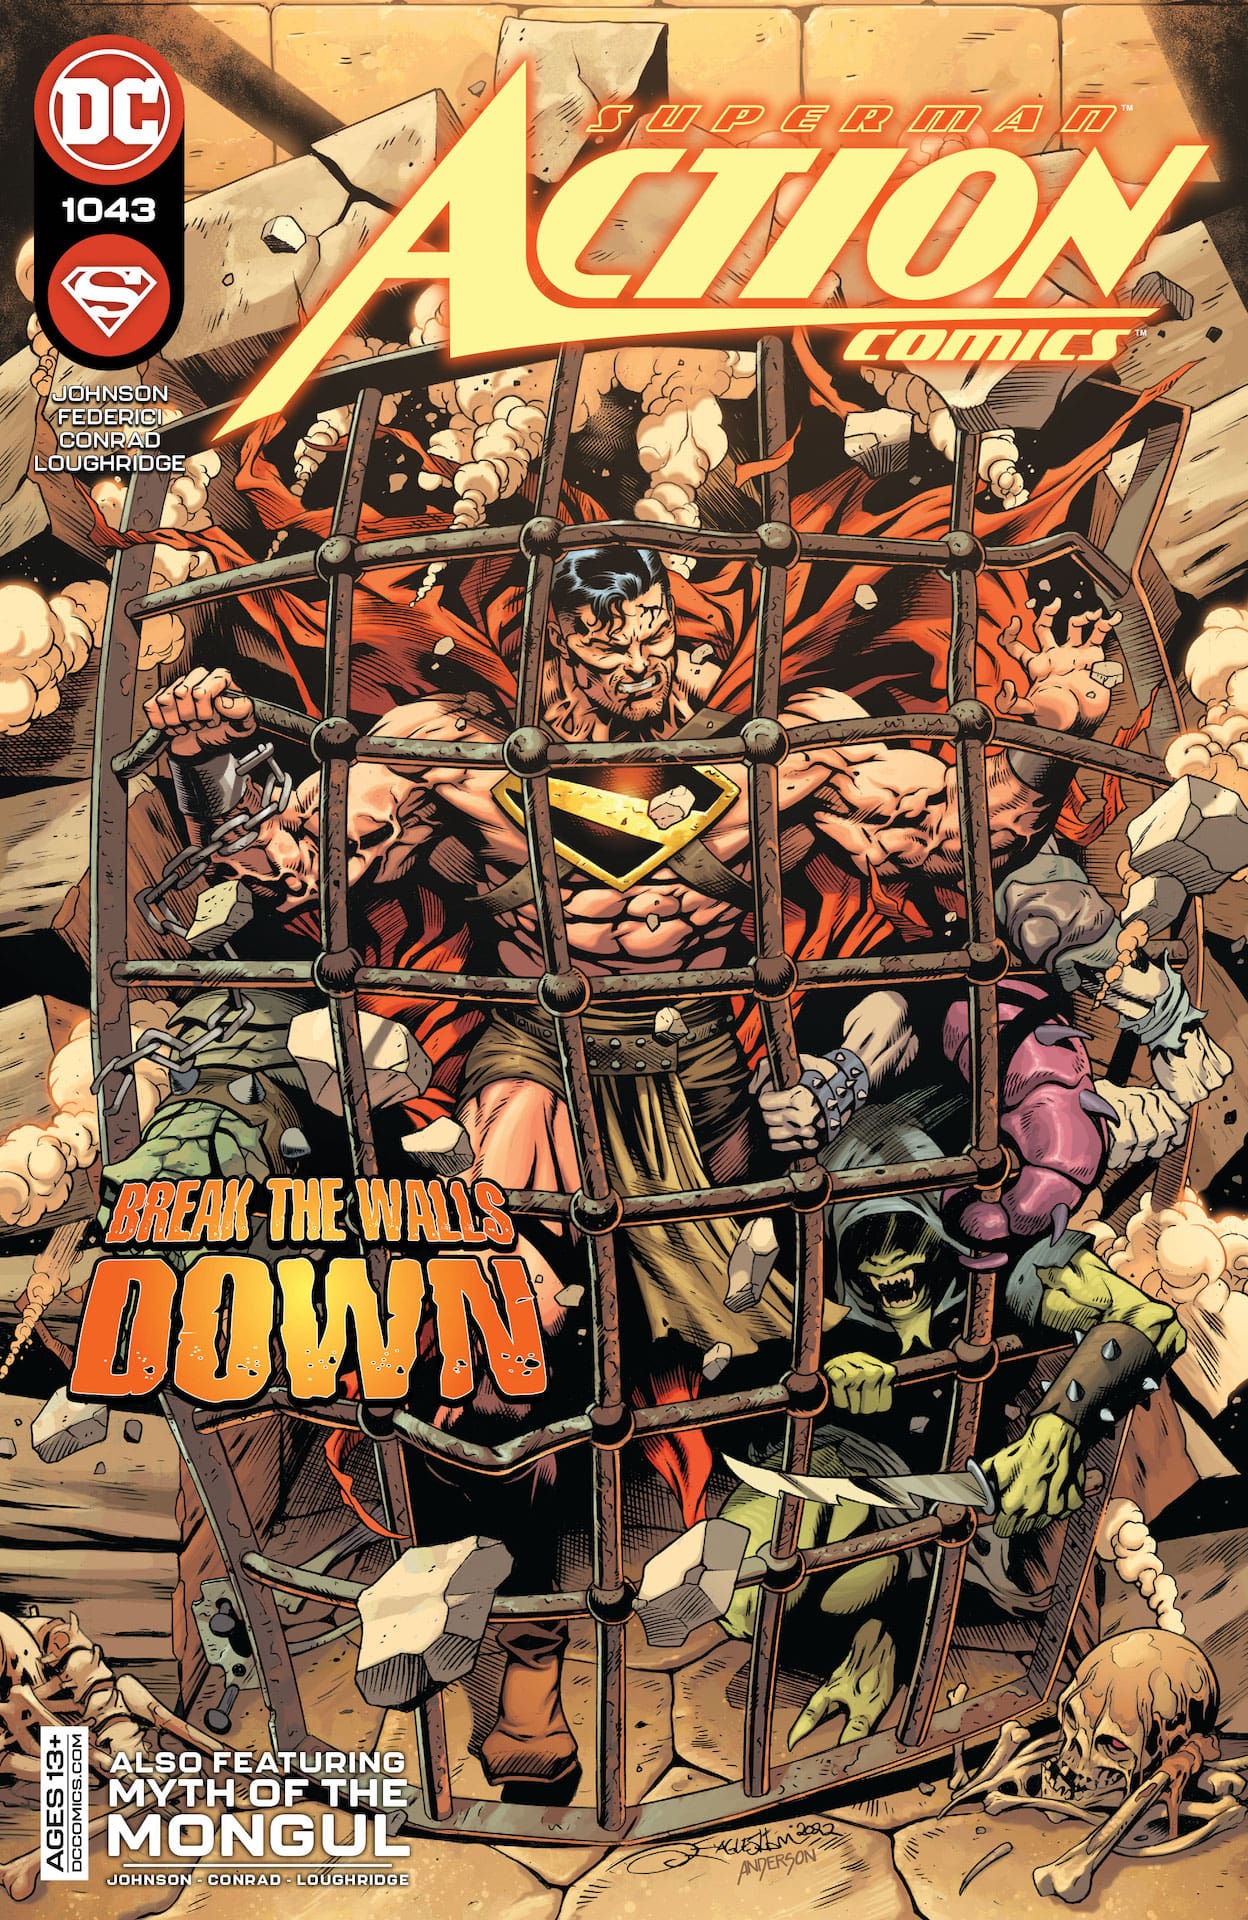 DC Preview: Action Comics #1043